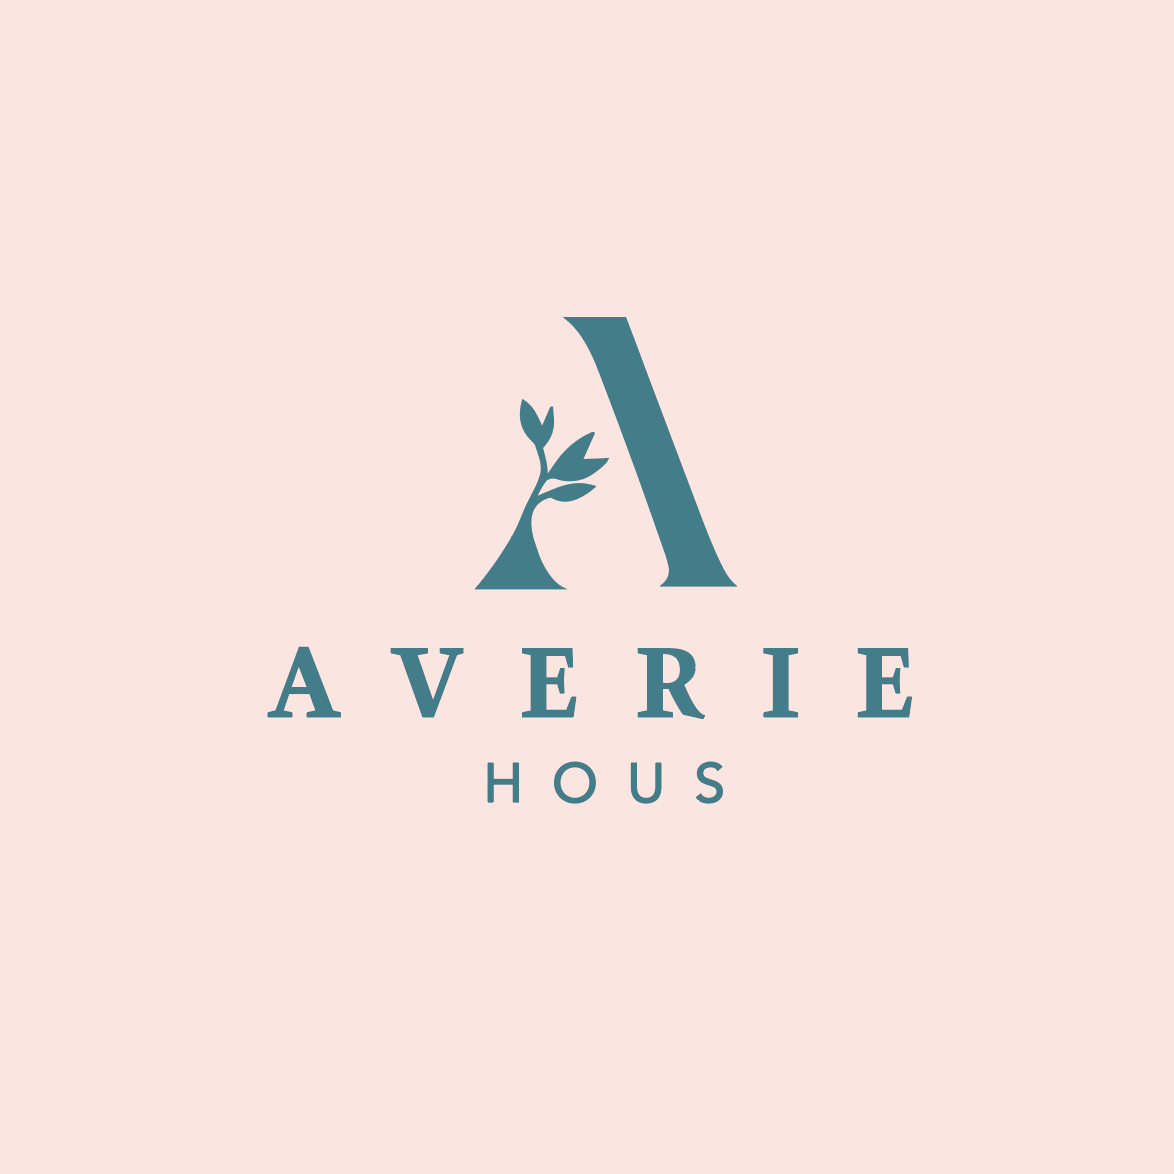 Averie Hous logo